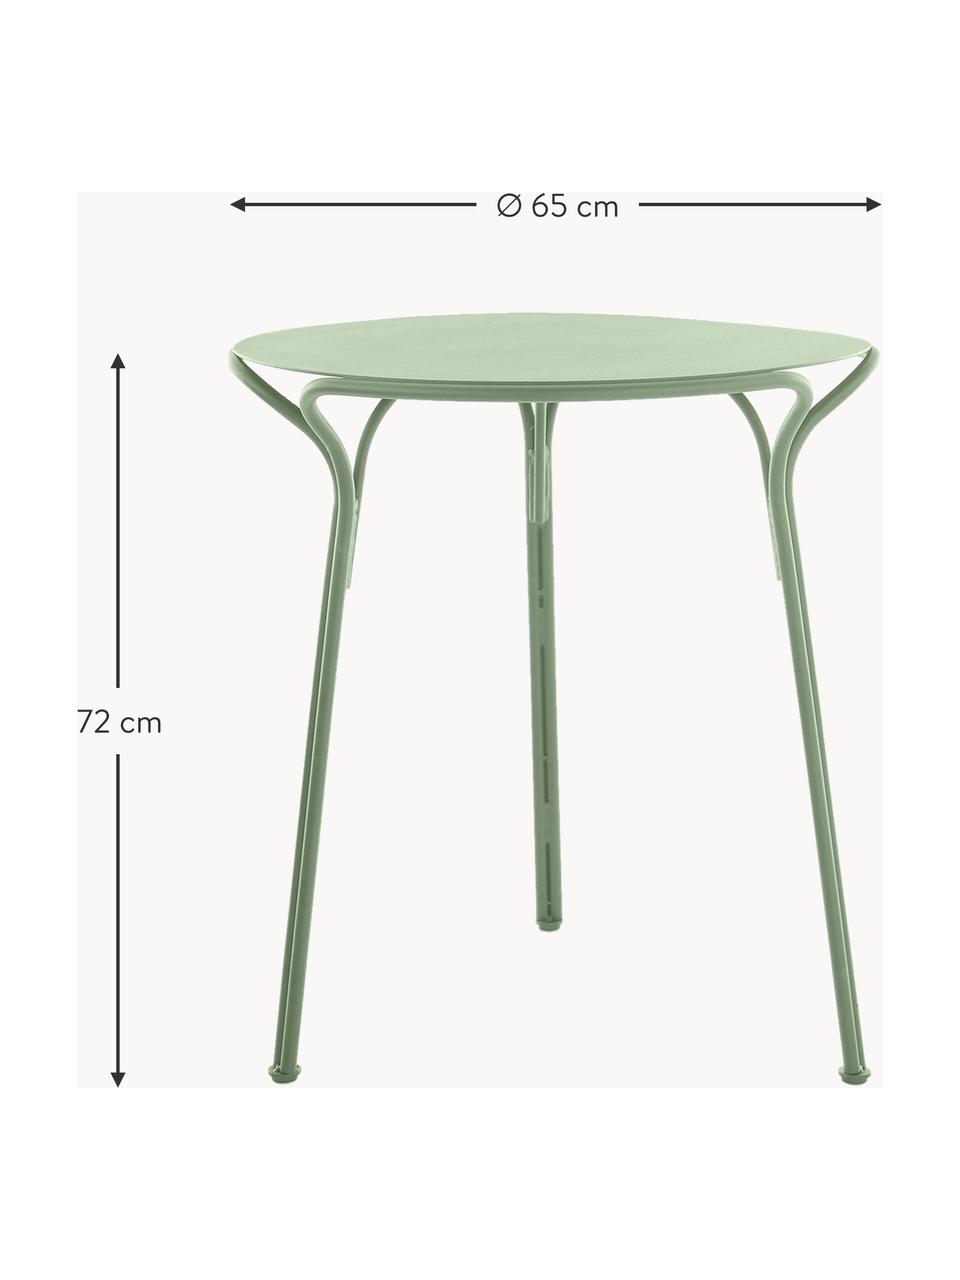 Runder Gartentisch Hiray, Ø 65 cm, Verzinkter Stahl, lackiert, Salbeigrün, Ø 65 x H 72 cm